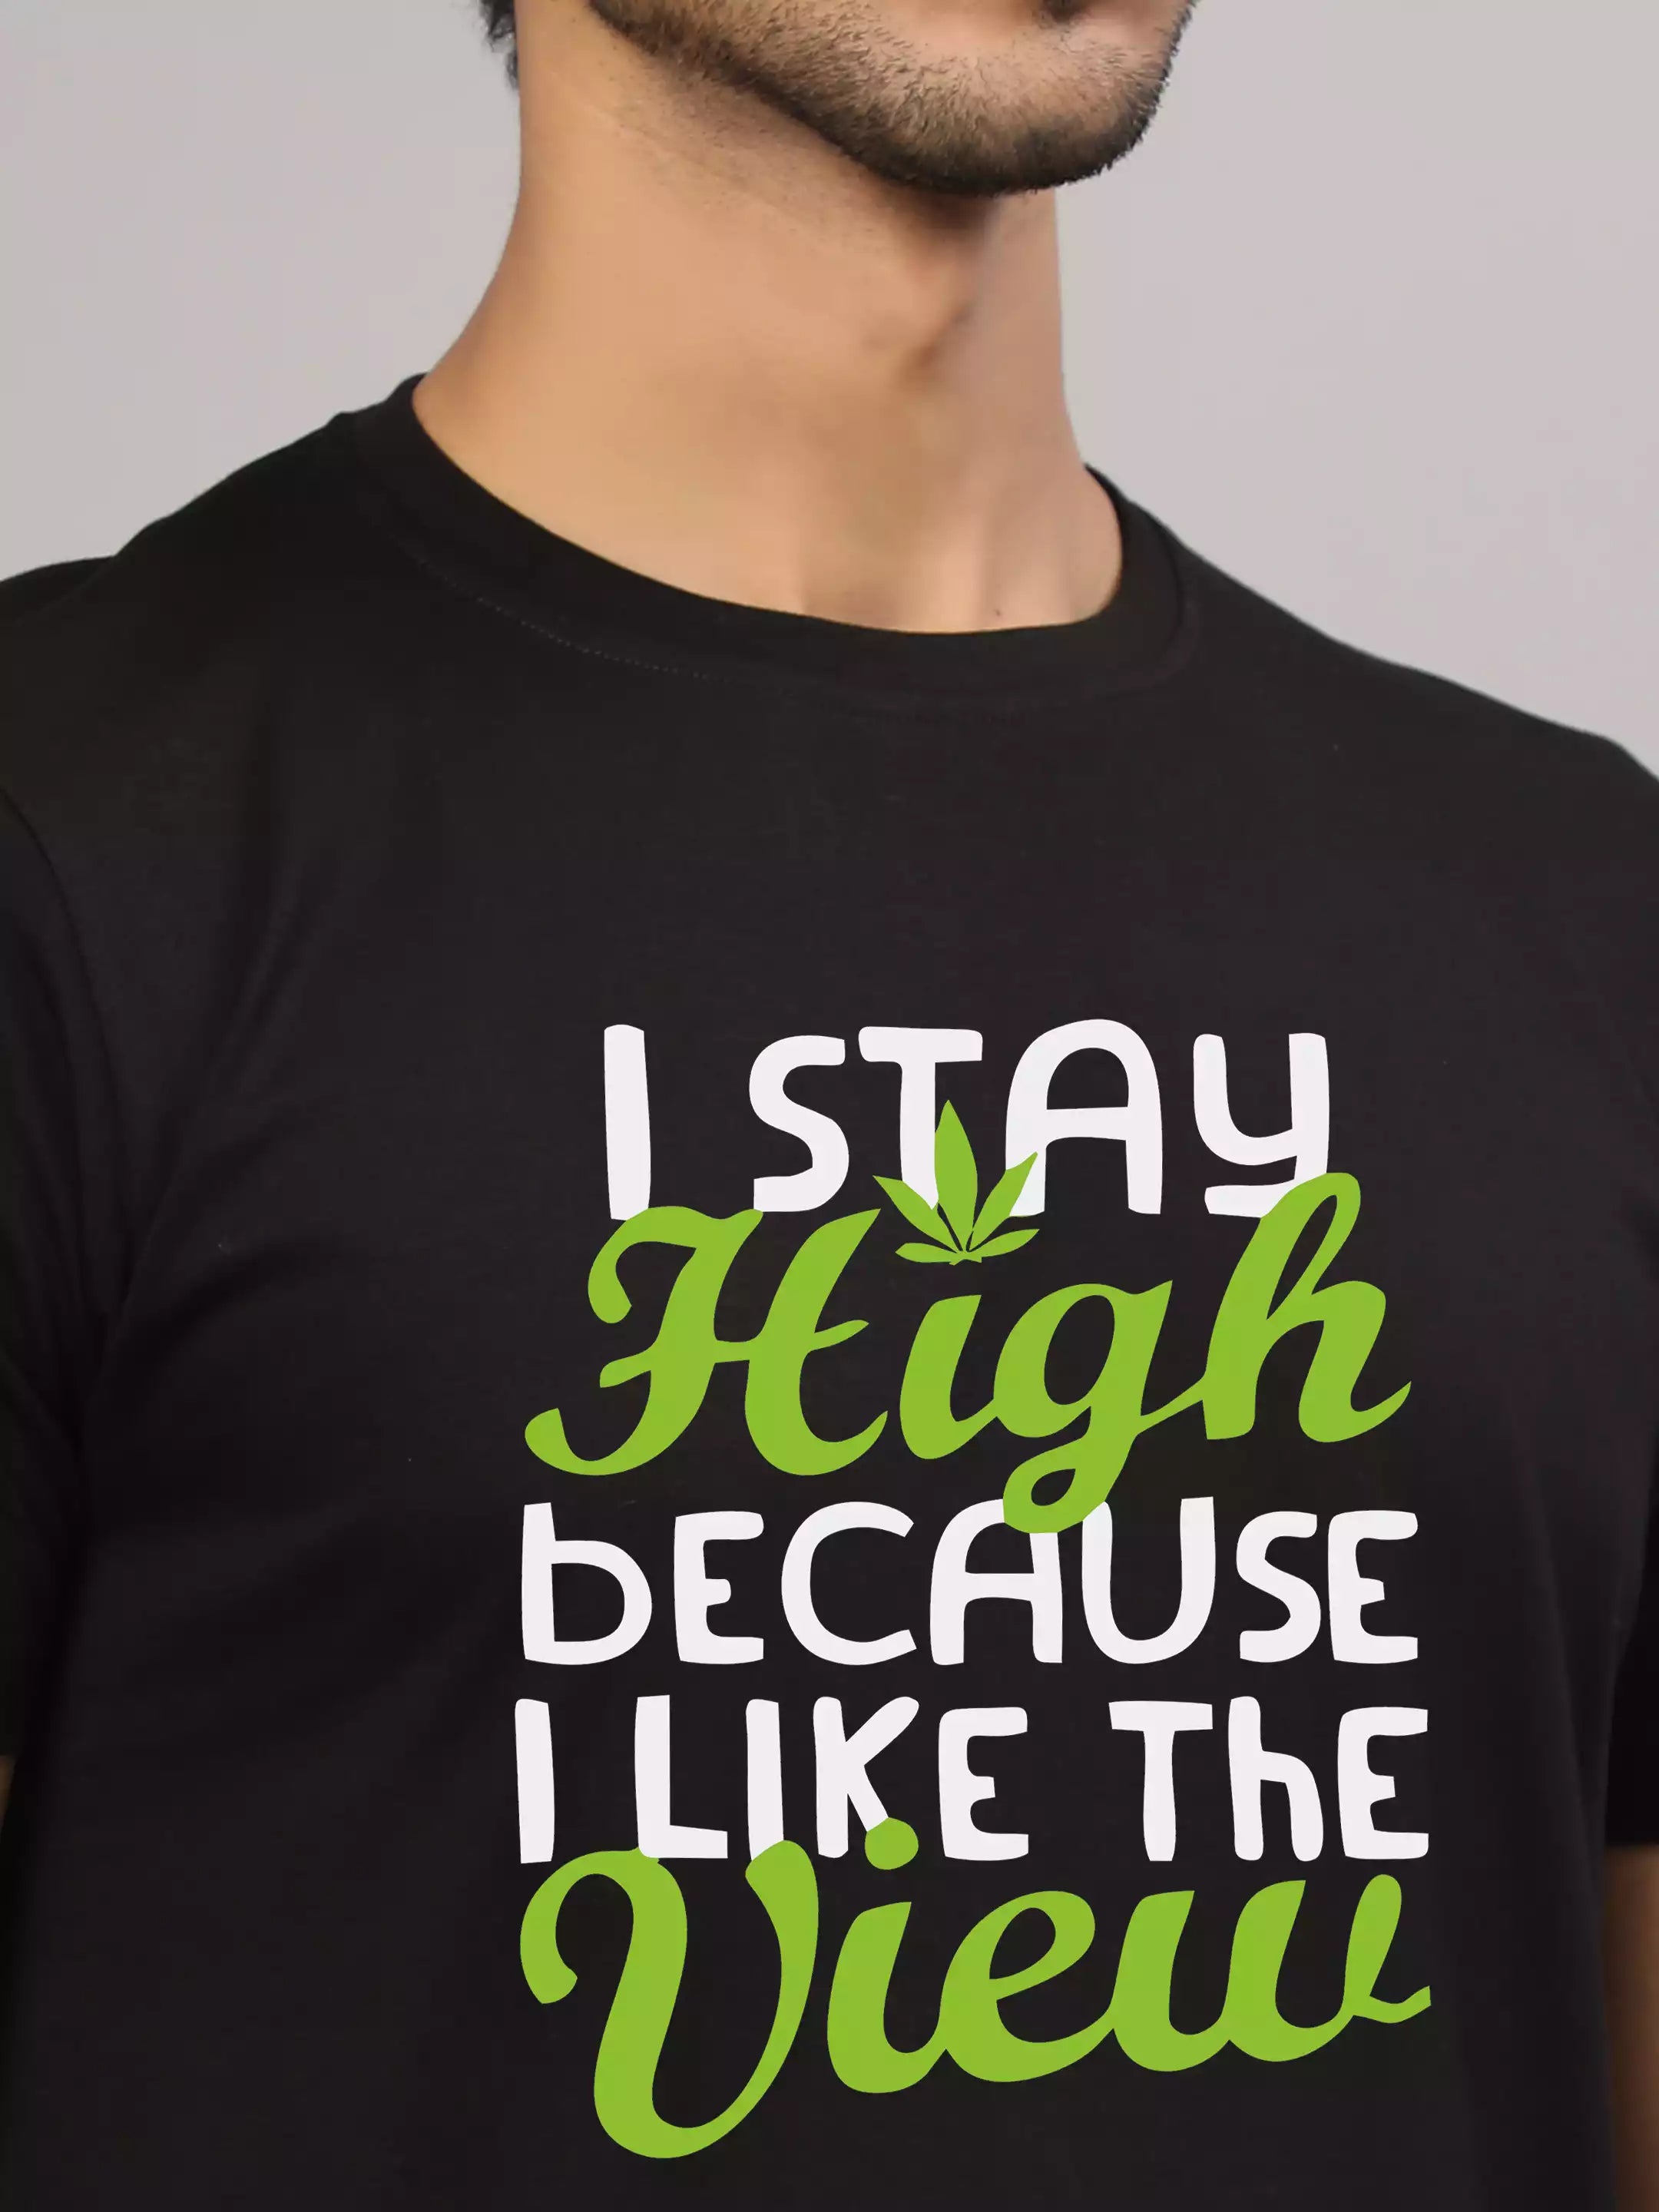 I stay high - Sukhiaatma Unisex Graphic Printed Black T-shirt